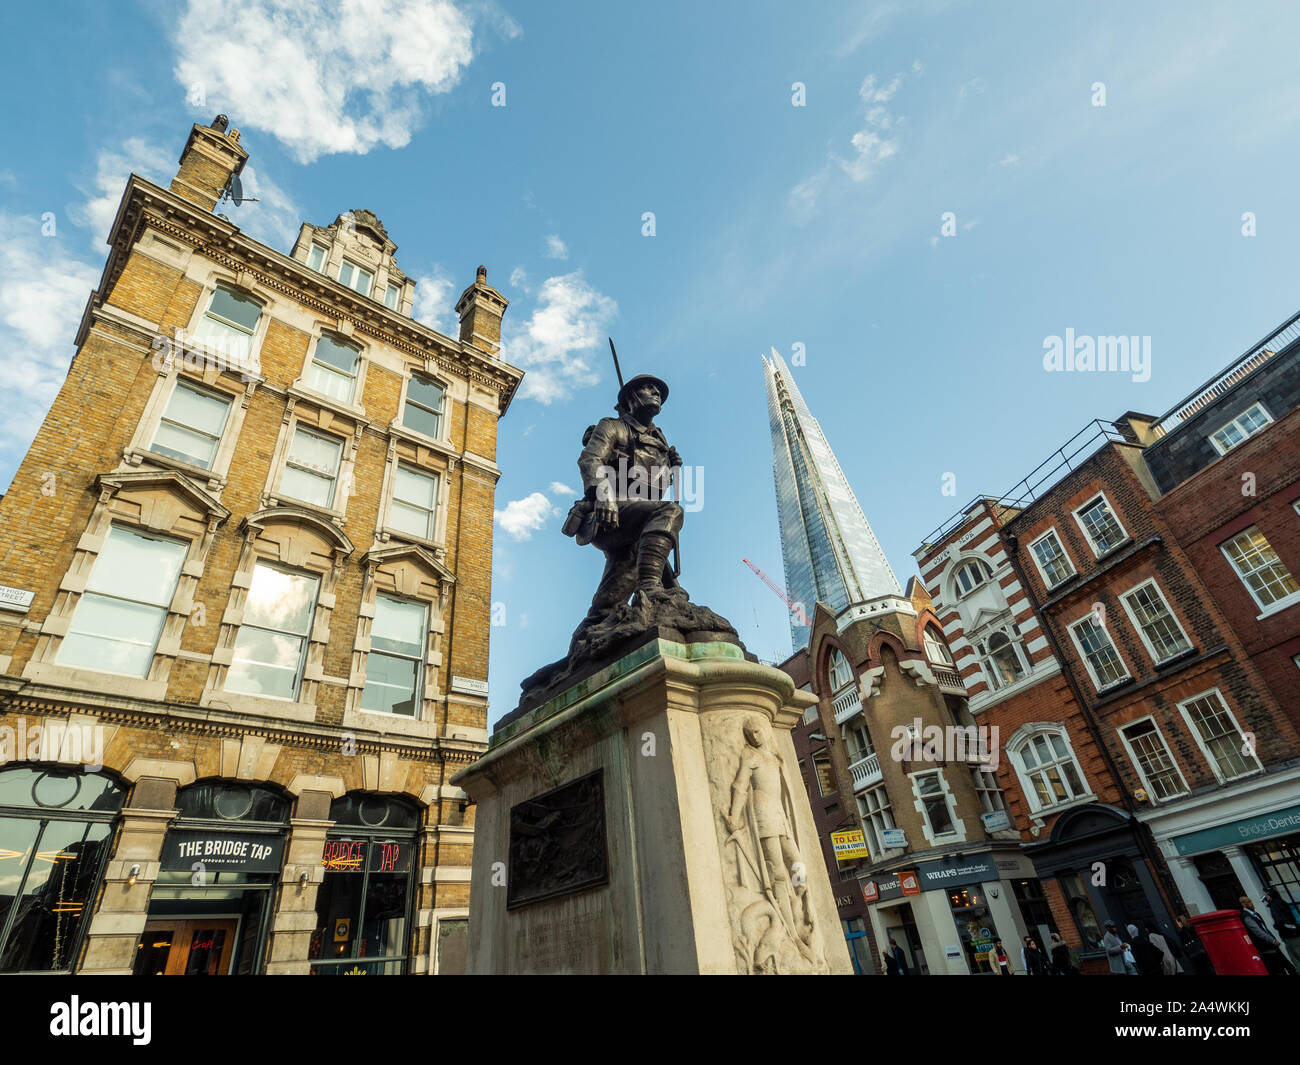 St Saviour's War memorial on Borough High Street, London, England. Stock Photo